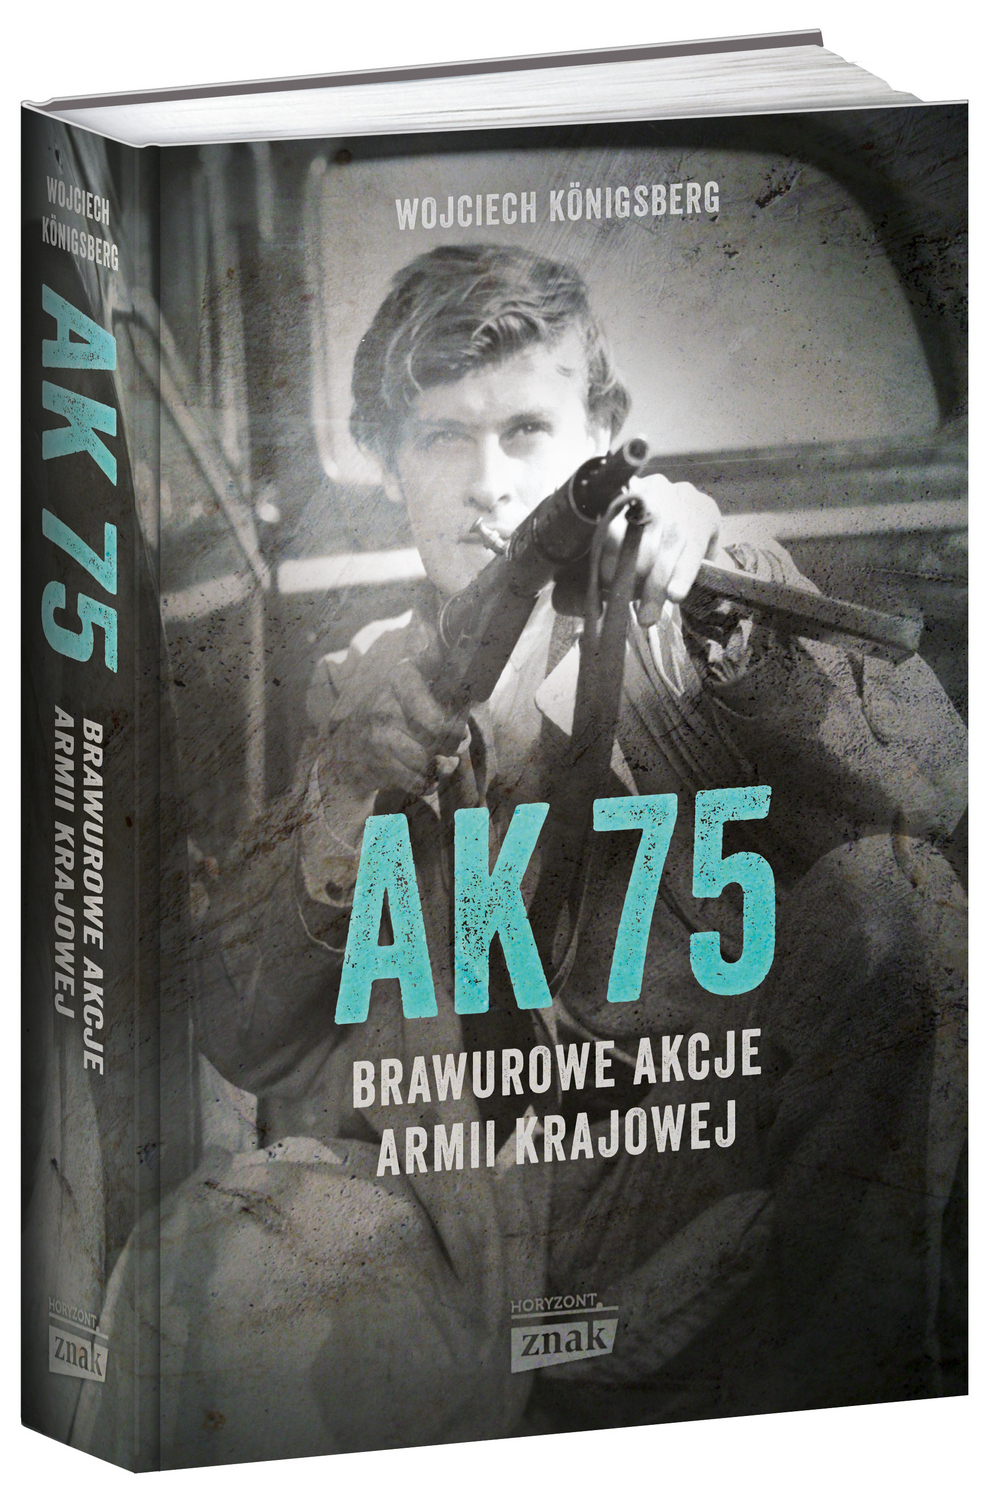 O innych akcjach żołnierzy polskiego podziemia przeczytasz w książce Wojciecha Königsberga pod tytułem "AK 75. Brawurowe akcje Armii Krajowej" (Znak Horyzont 2017).